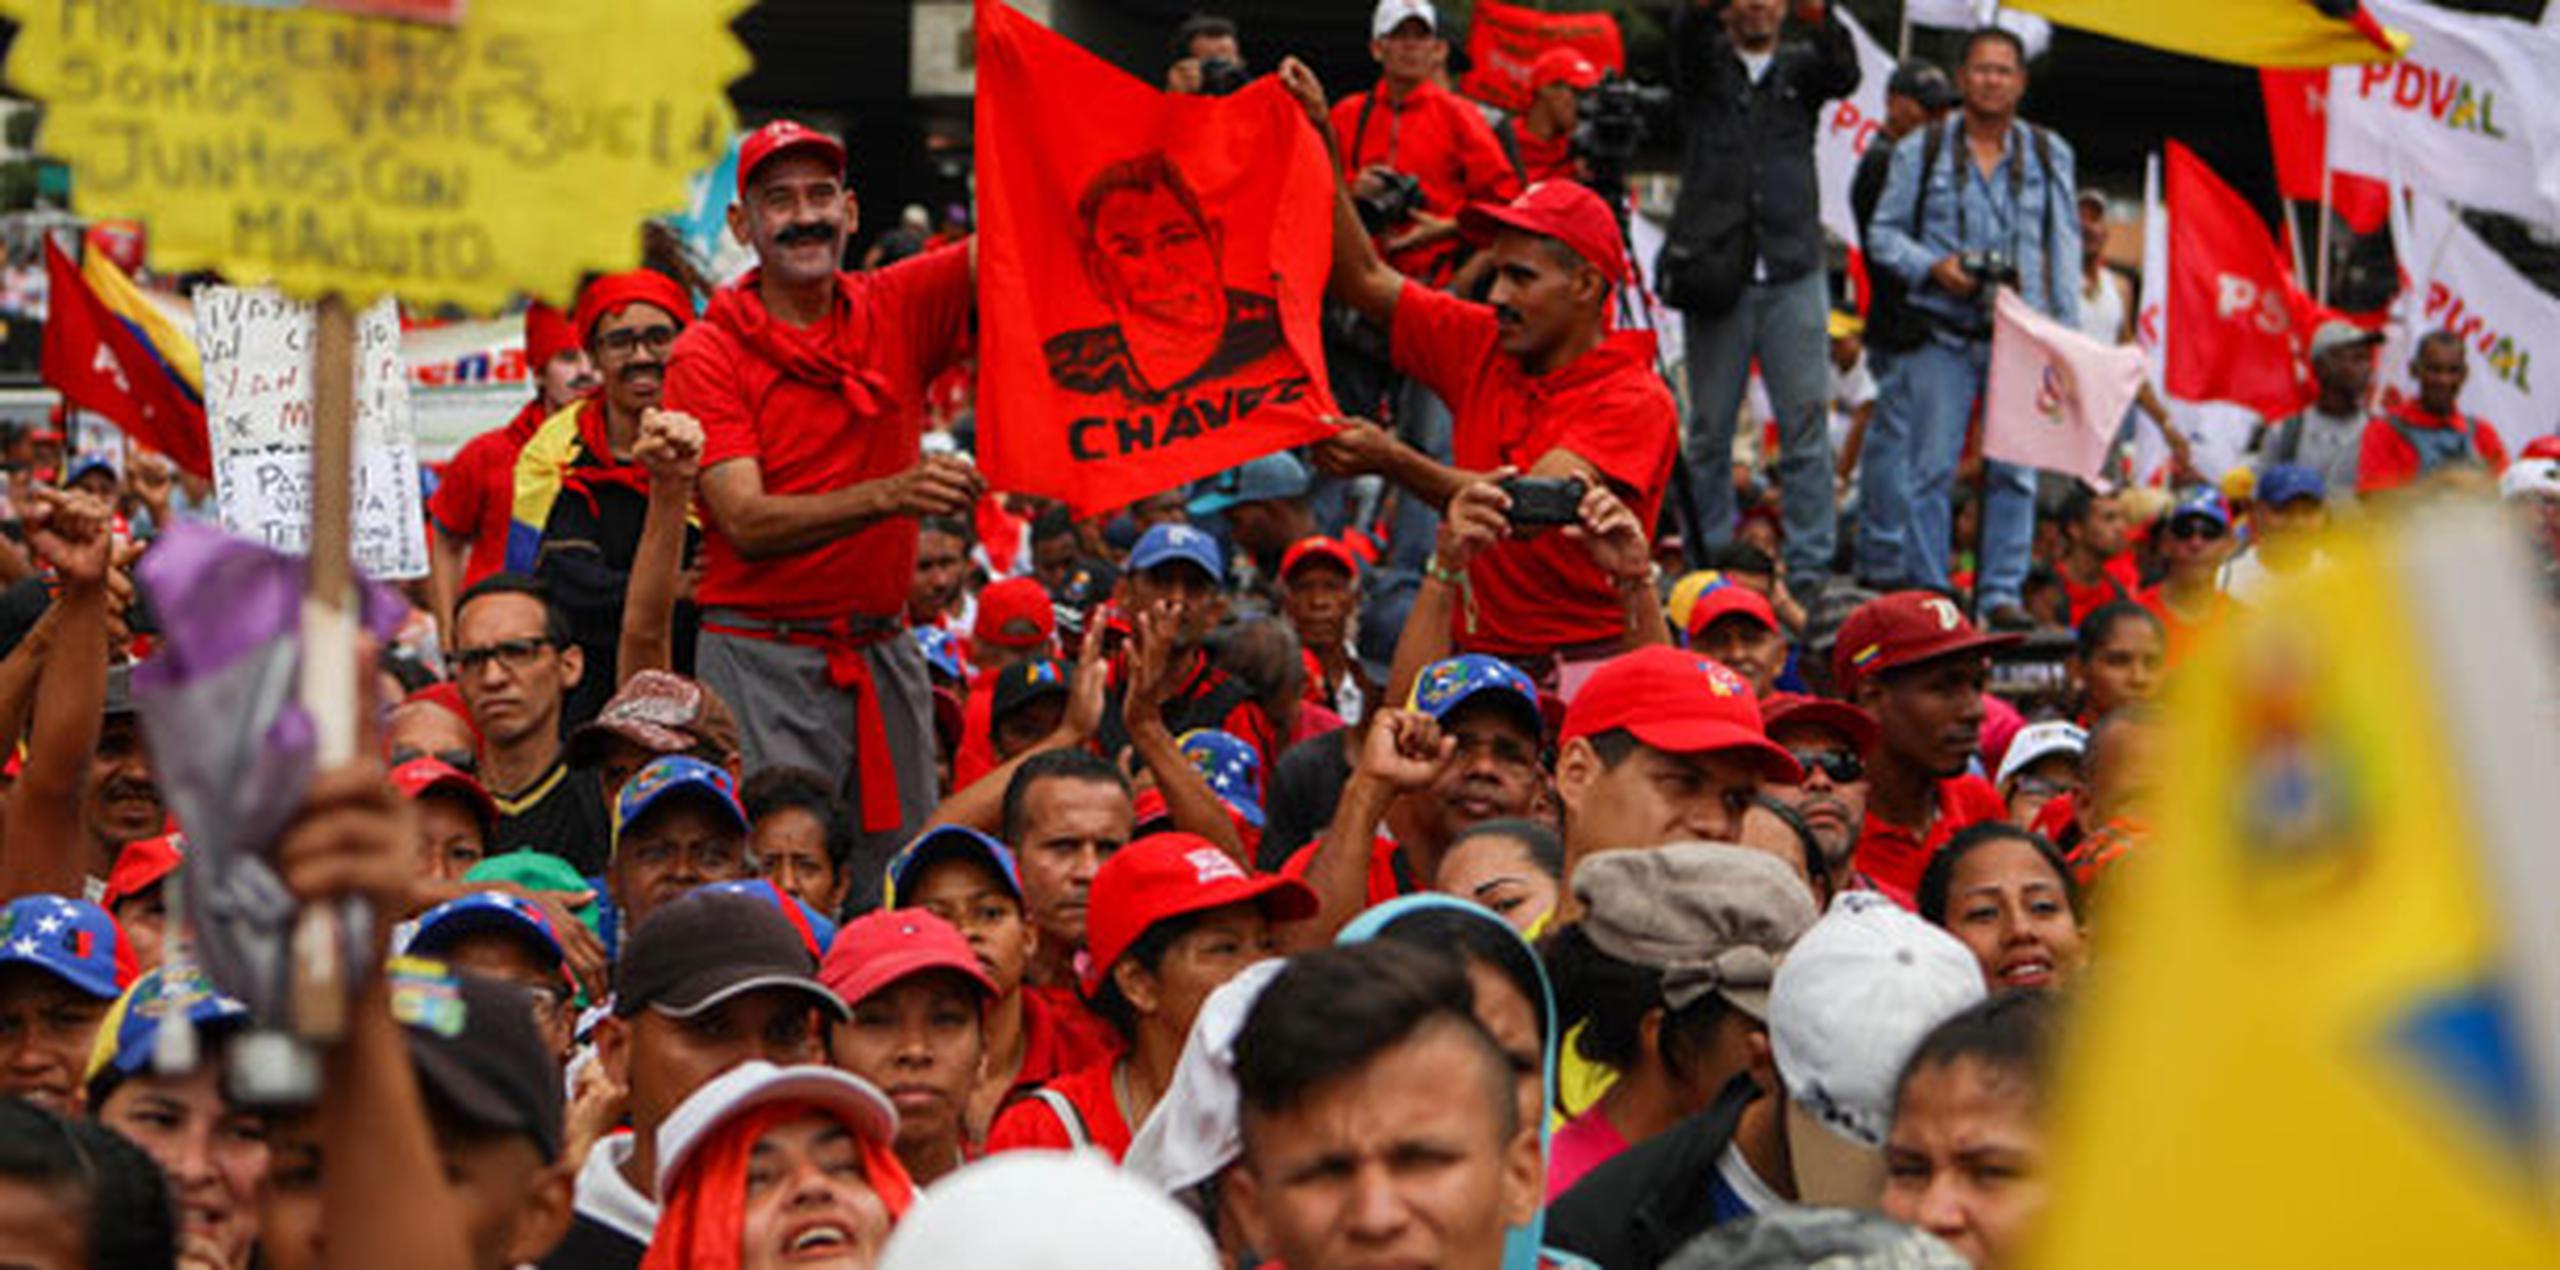 La declaración oficial generó el rechazo inmediato por parte de los líderes de la oposición venezolana cercanos al concejal, Alberto Albán Salazar. (Archivo)